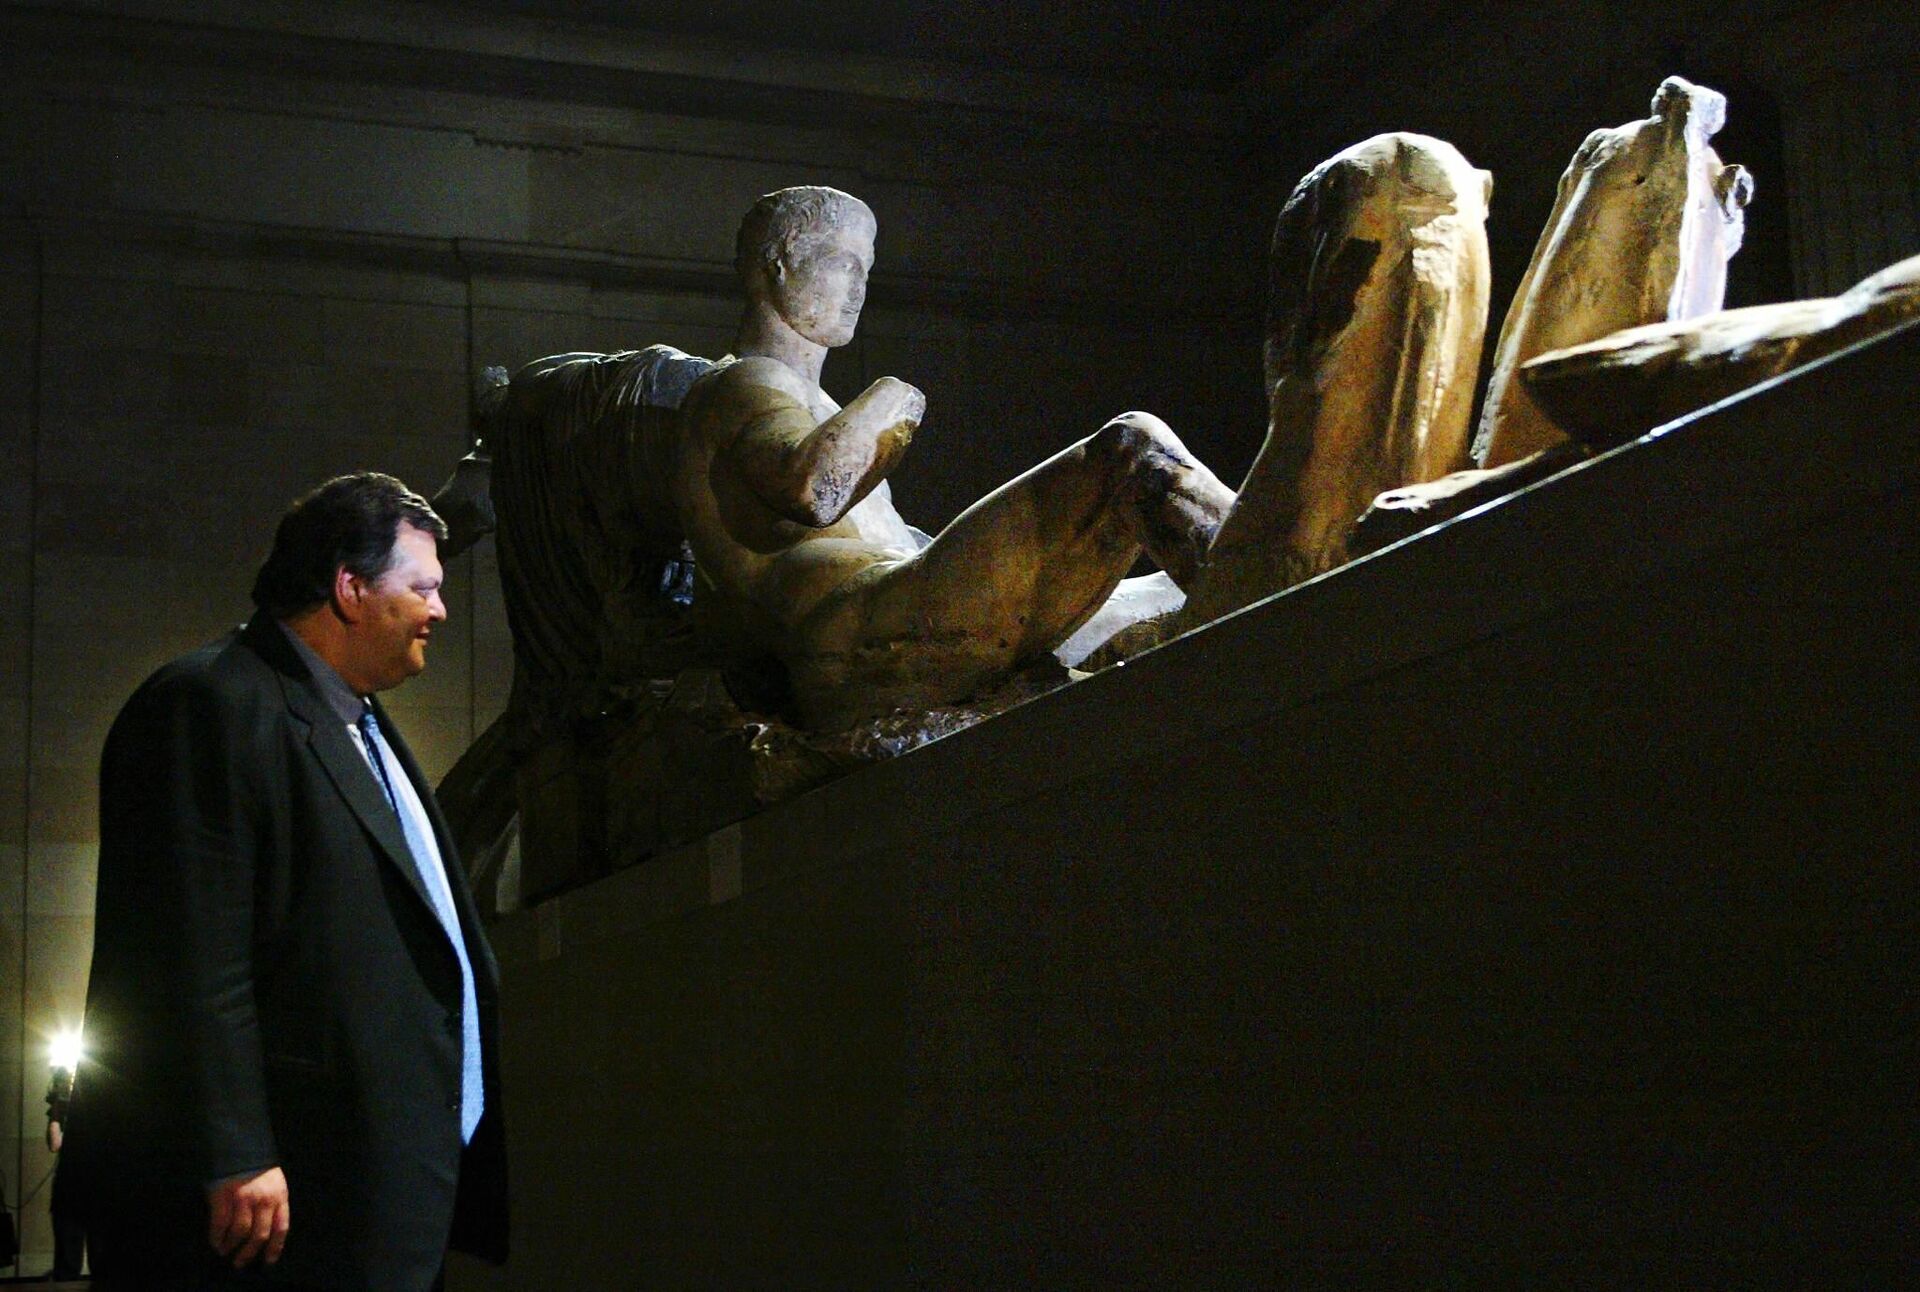 Професор Евангелос Венизелос, грчки министар културе и спорта, испитује Елгинове мермере у Британском музеју у Лондону 11. новембра 2002. Венизелос се састао са директором музеја како би разговарао о могућем решењу за враћање мермера у Грчку. Мермери, исклесани око 440. године, били су део Партенона све док их није узео лорд Елгин и донео у Британију у 19. веку. - Sputnik Србија, 1920, 01.12.2023